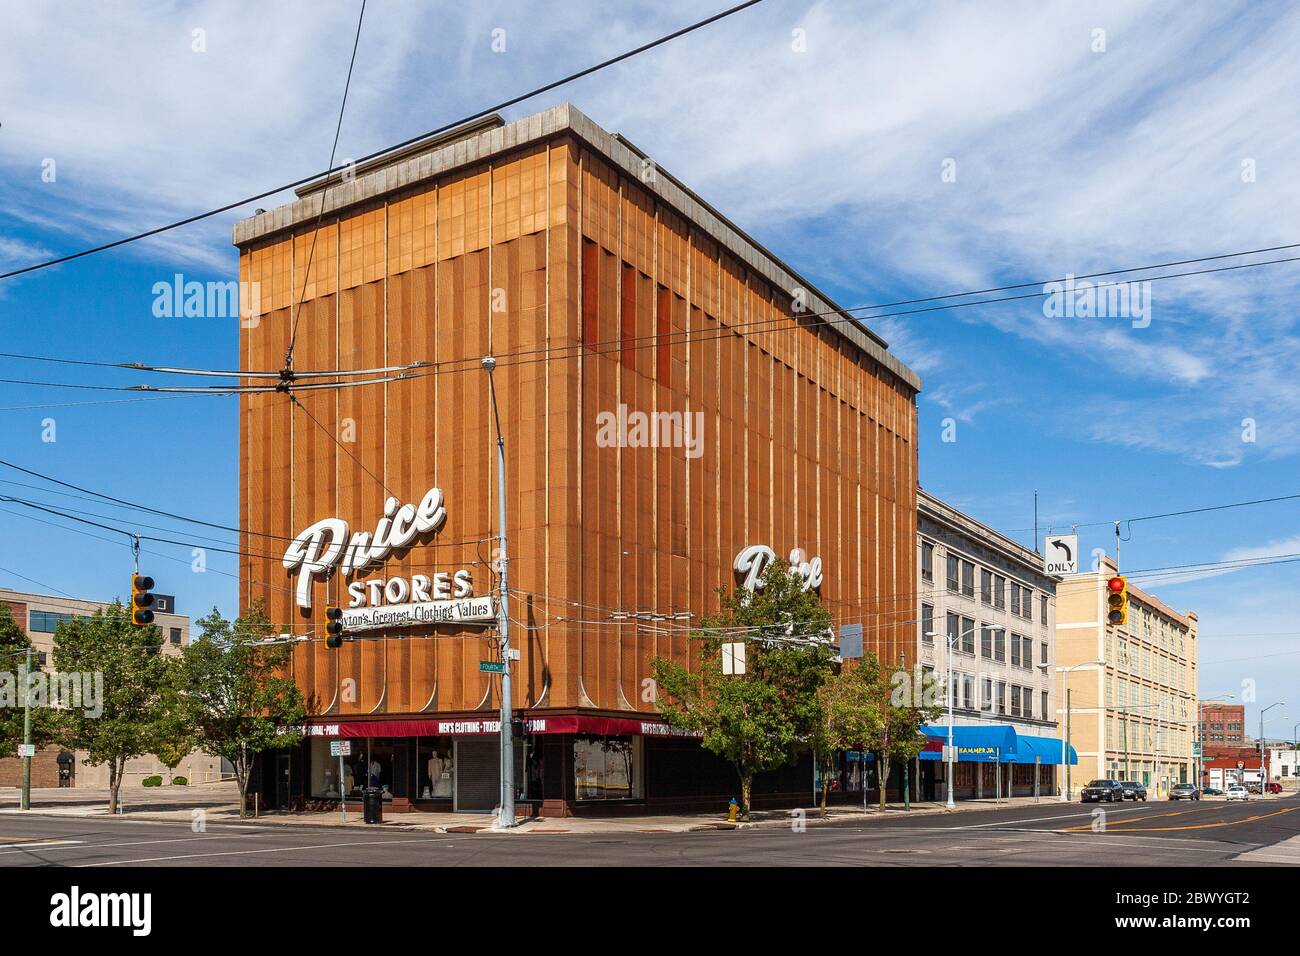 Price Stores Gebäude in der Innenstadt von Dayton Stockfoto